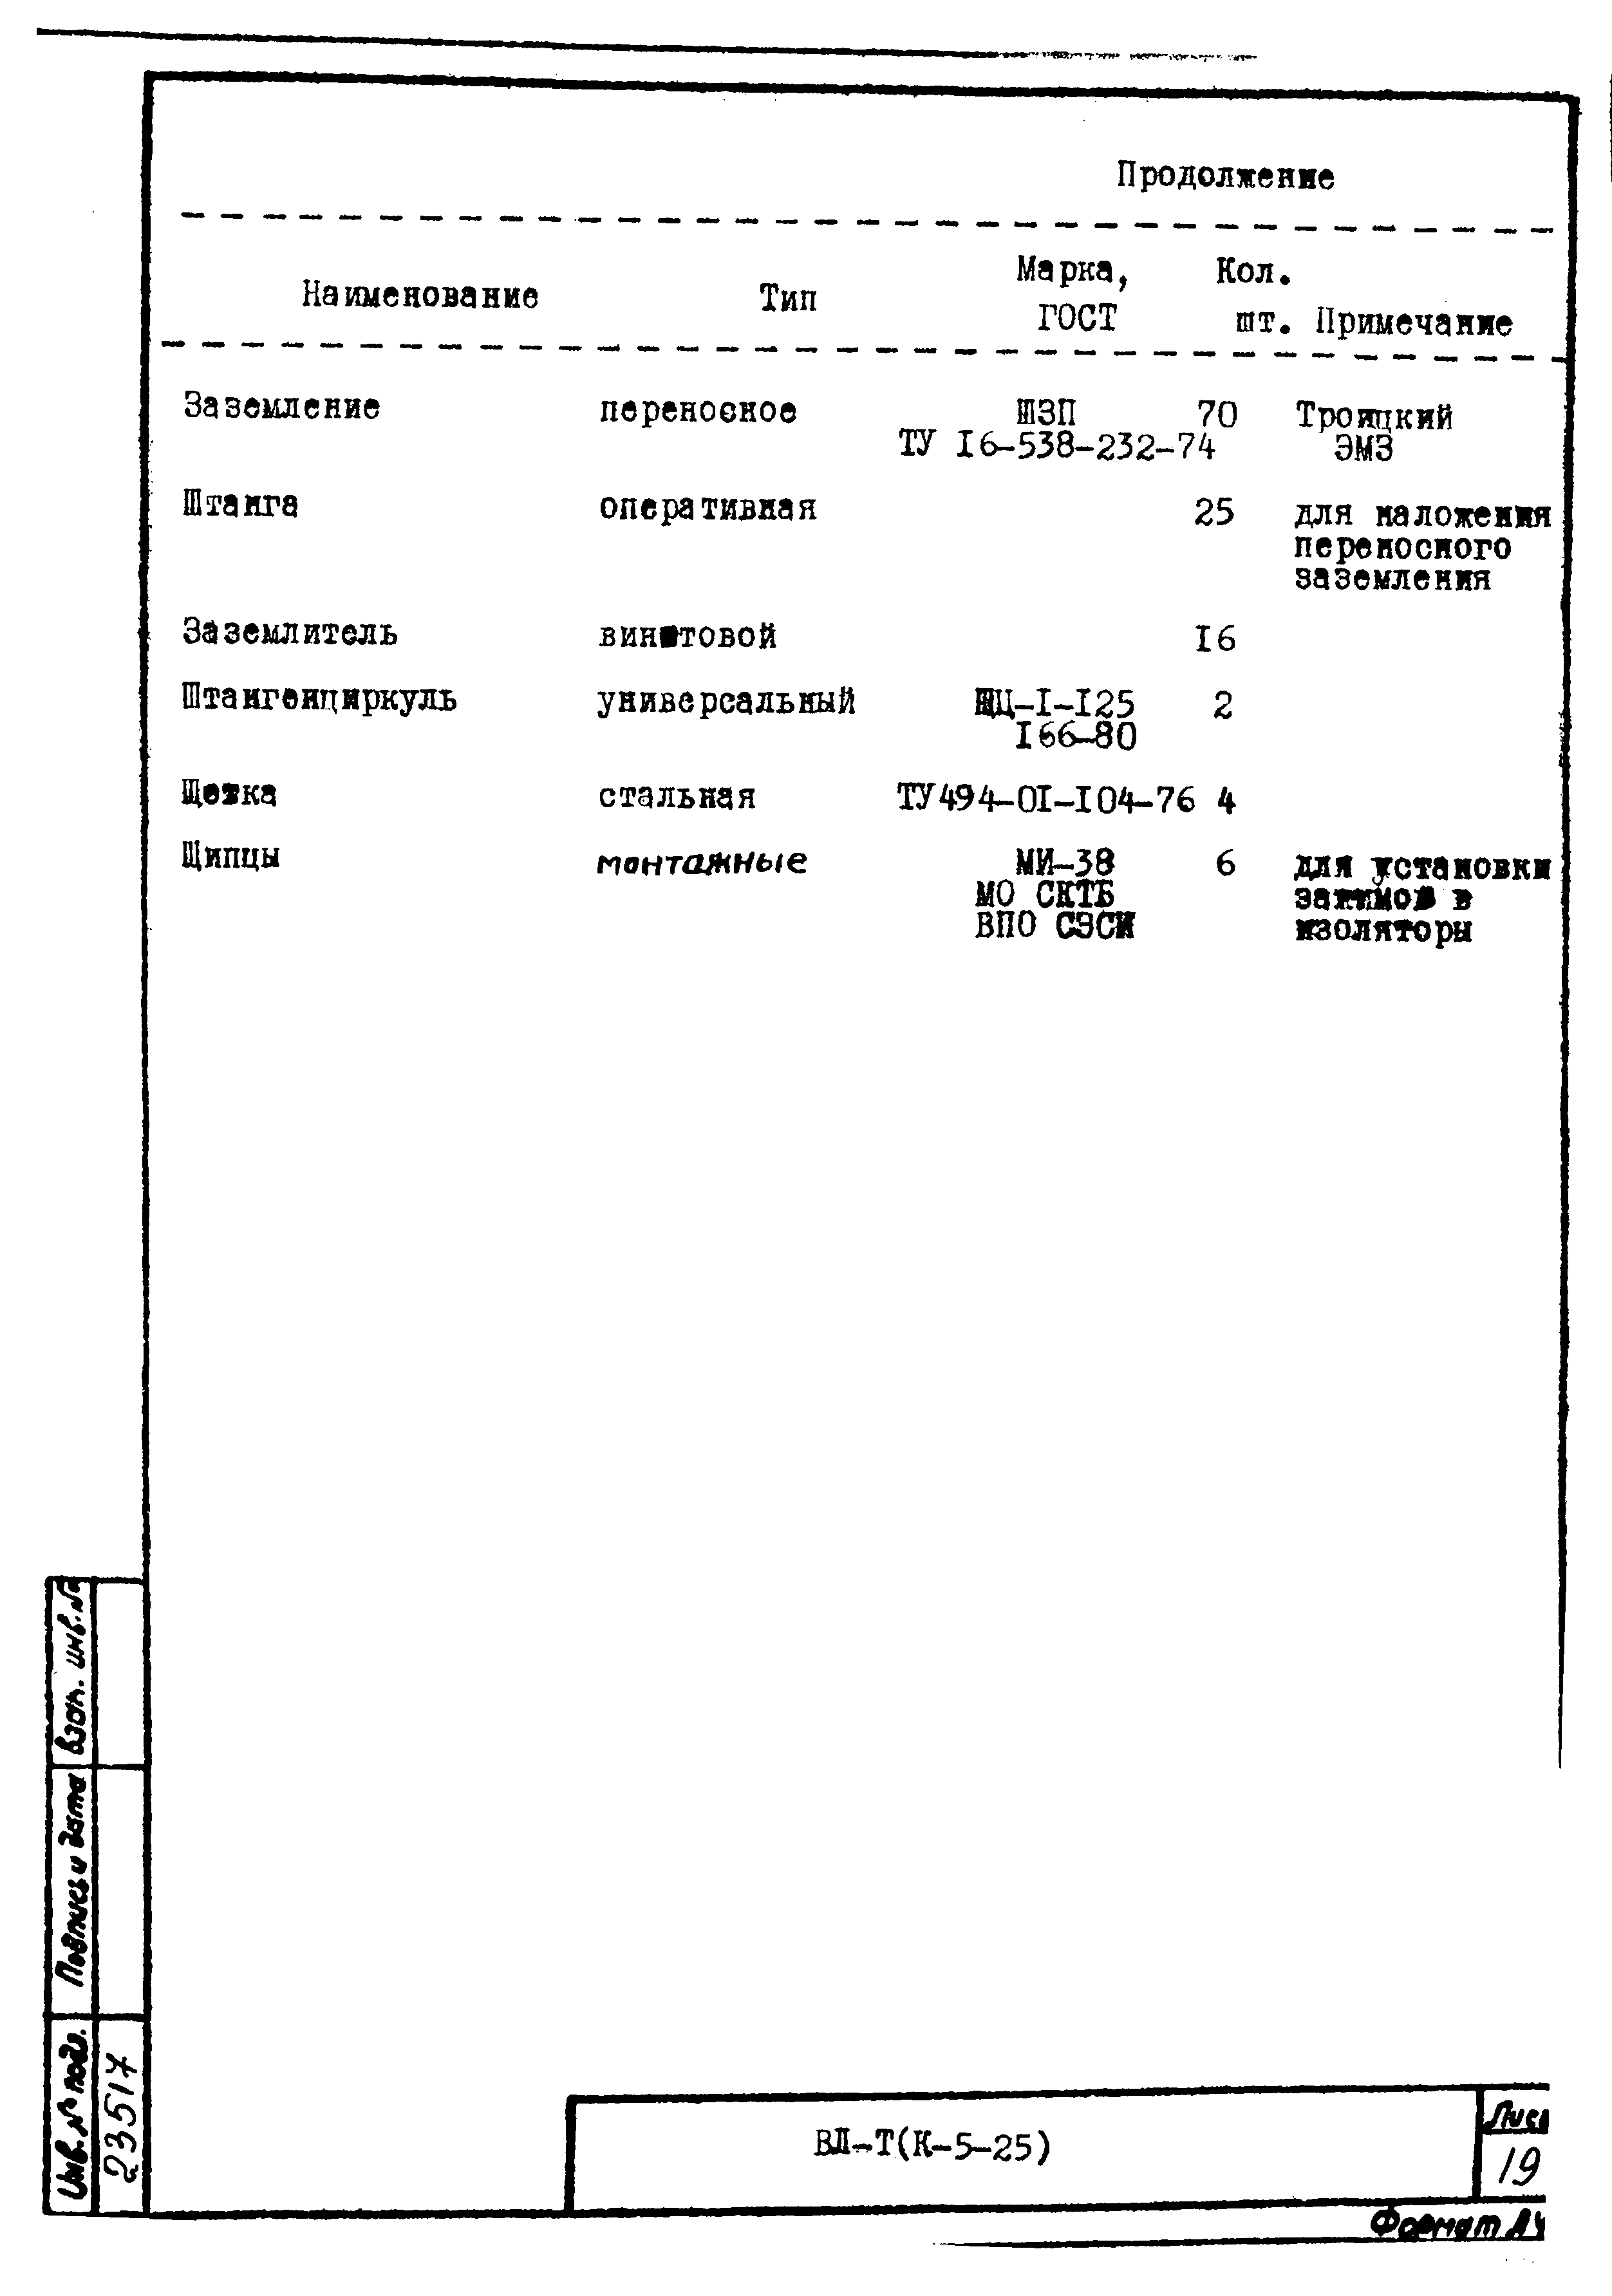 Технологическая карта К-5-25-23